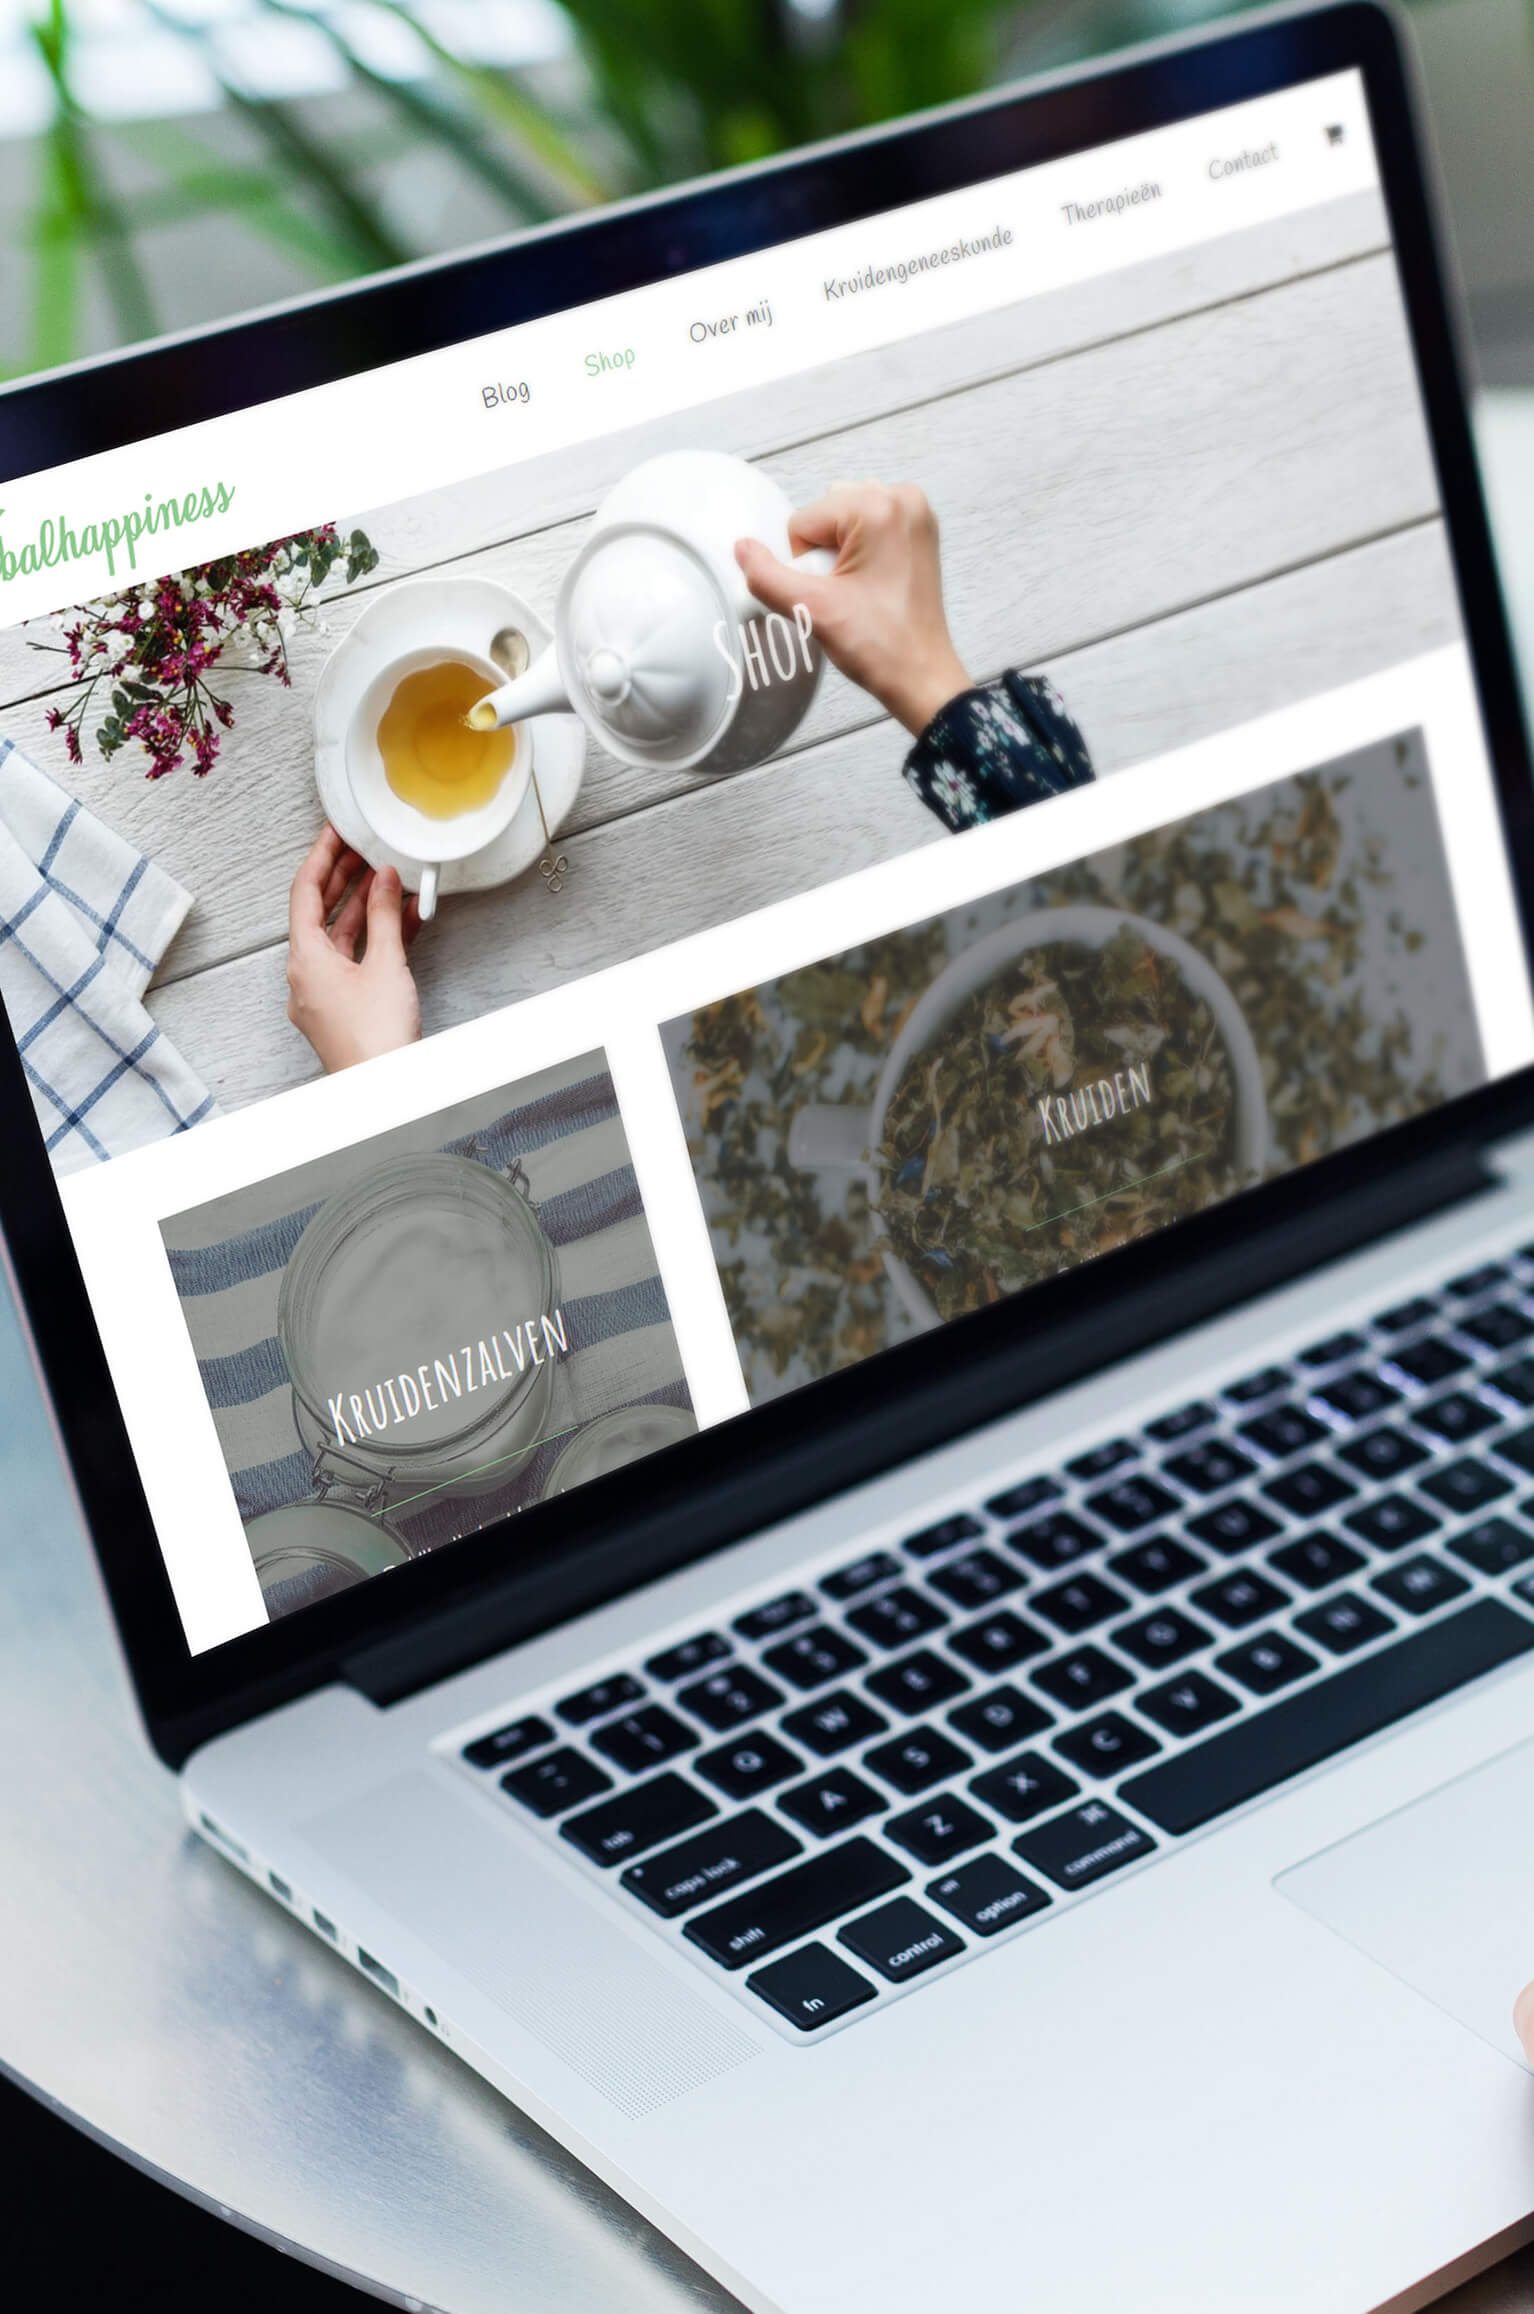 Herbalhappiness website